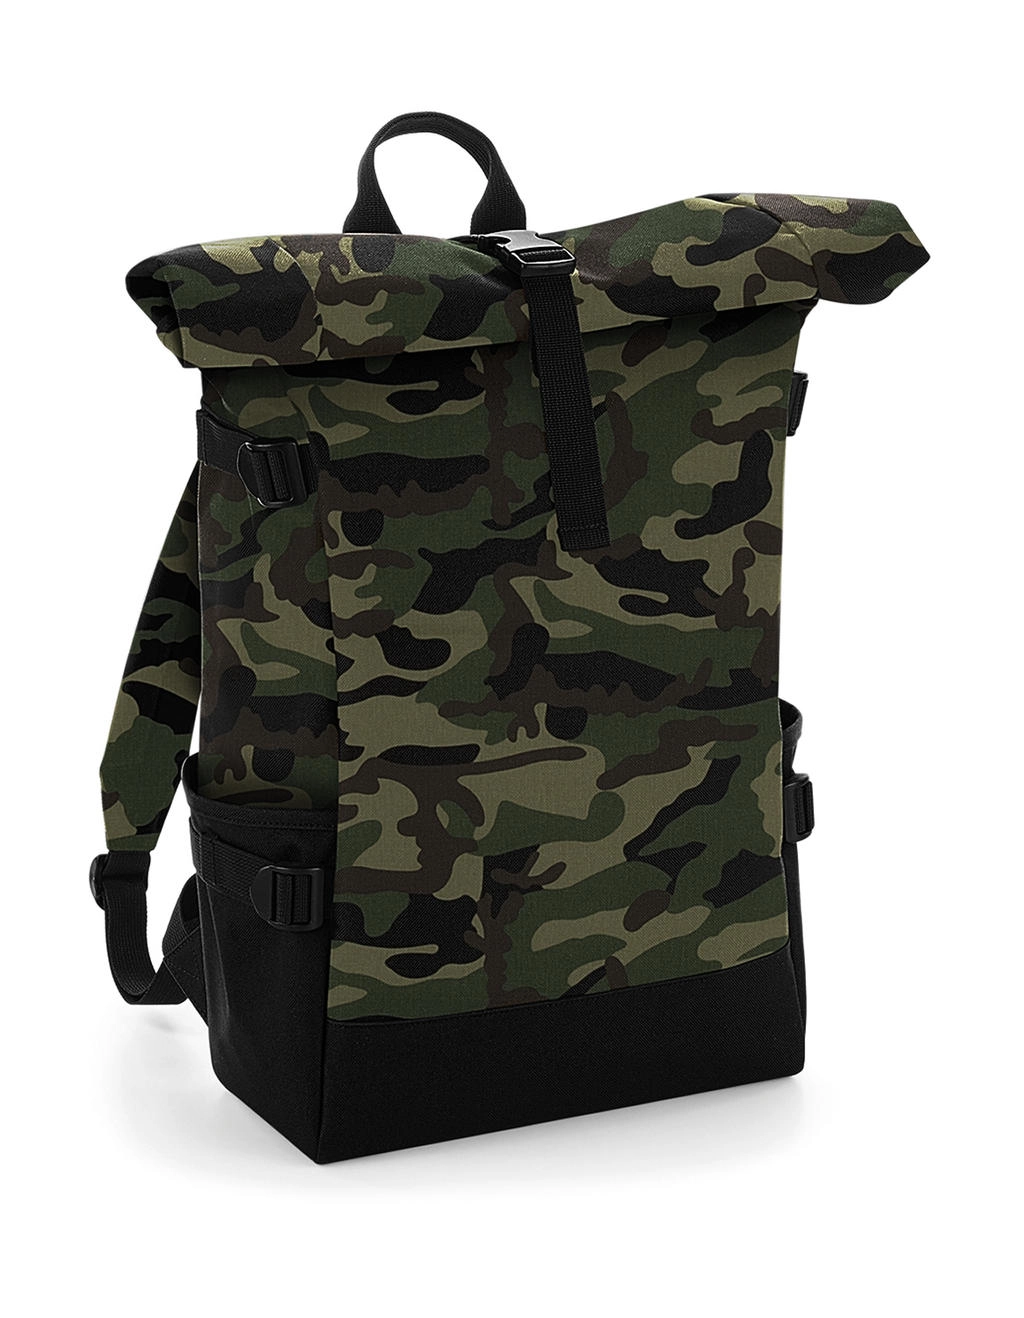 Block Roll-Top Backpack zum Besticken und Bedrucken in der Farbe Jungle Camo/Black mit Ihren Logo, Schriftzug oder Motiv.